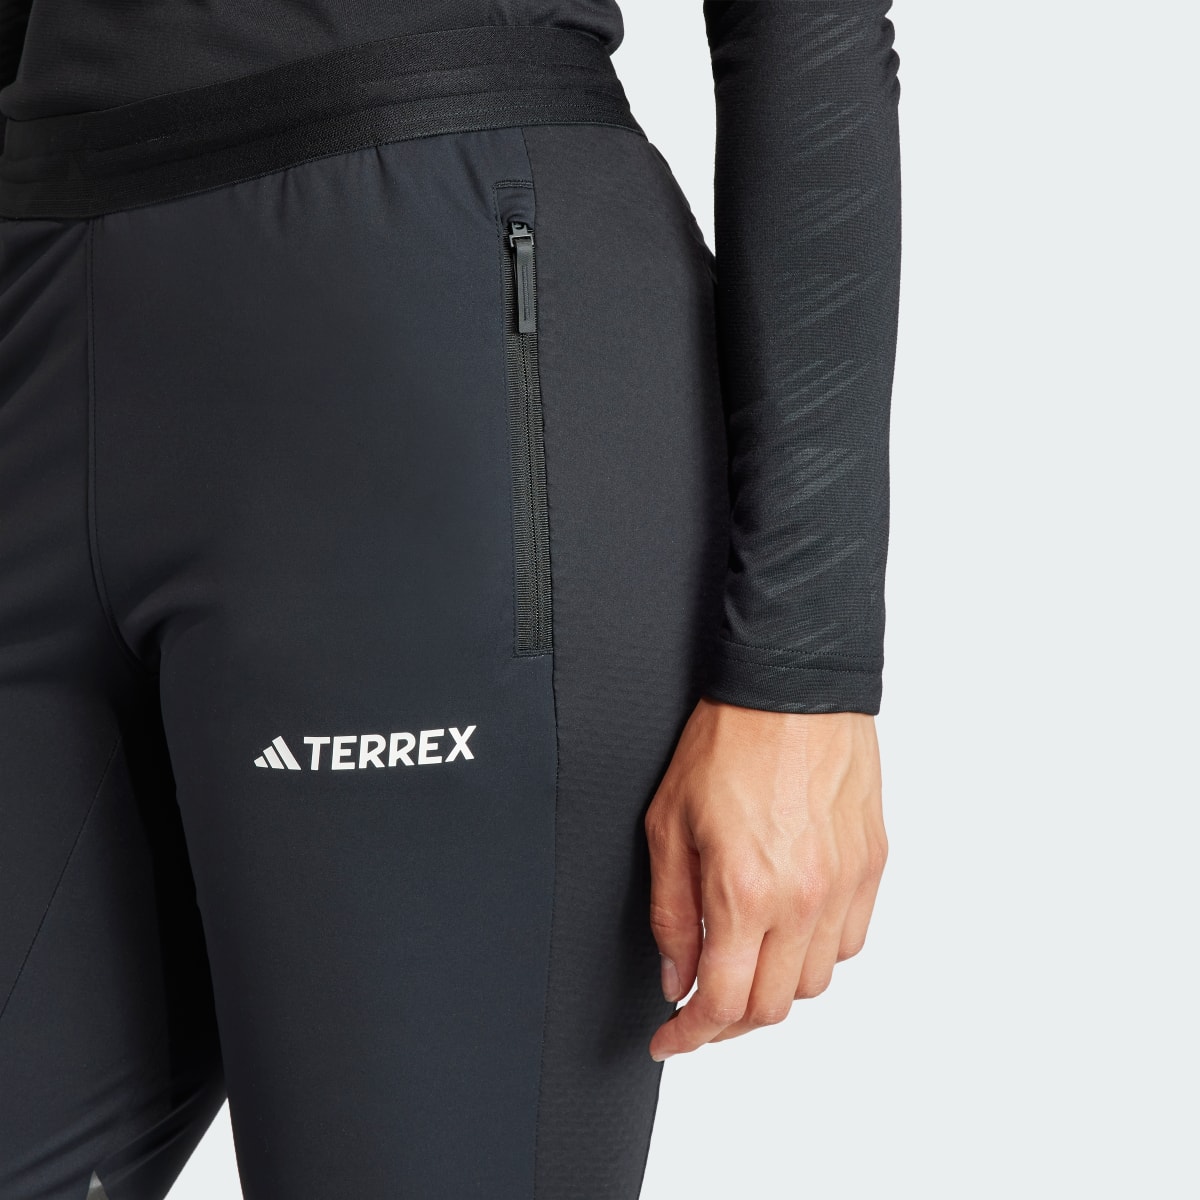 Adidas Terrex Xperior Cross Country Ski Soft Shell Hose. 7